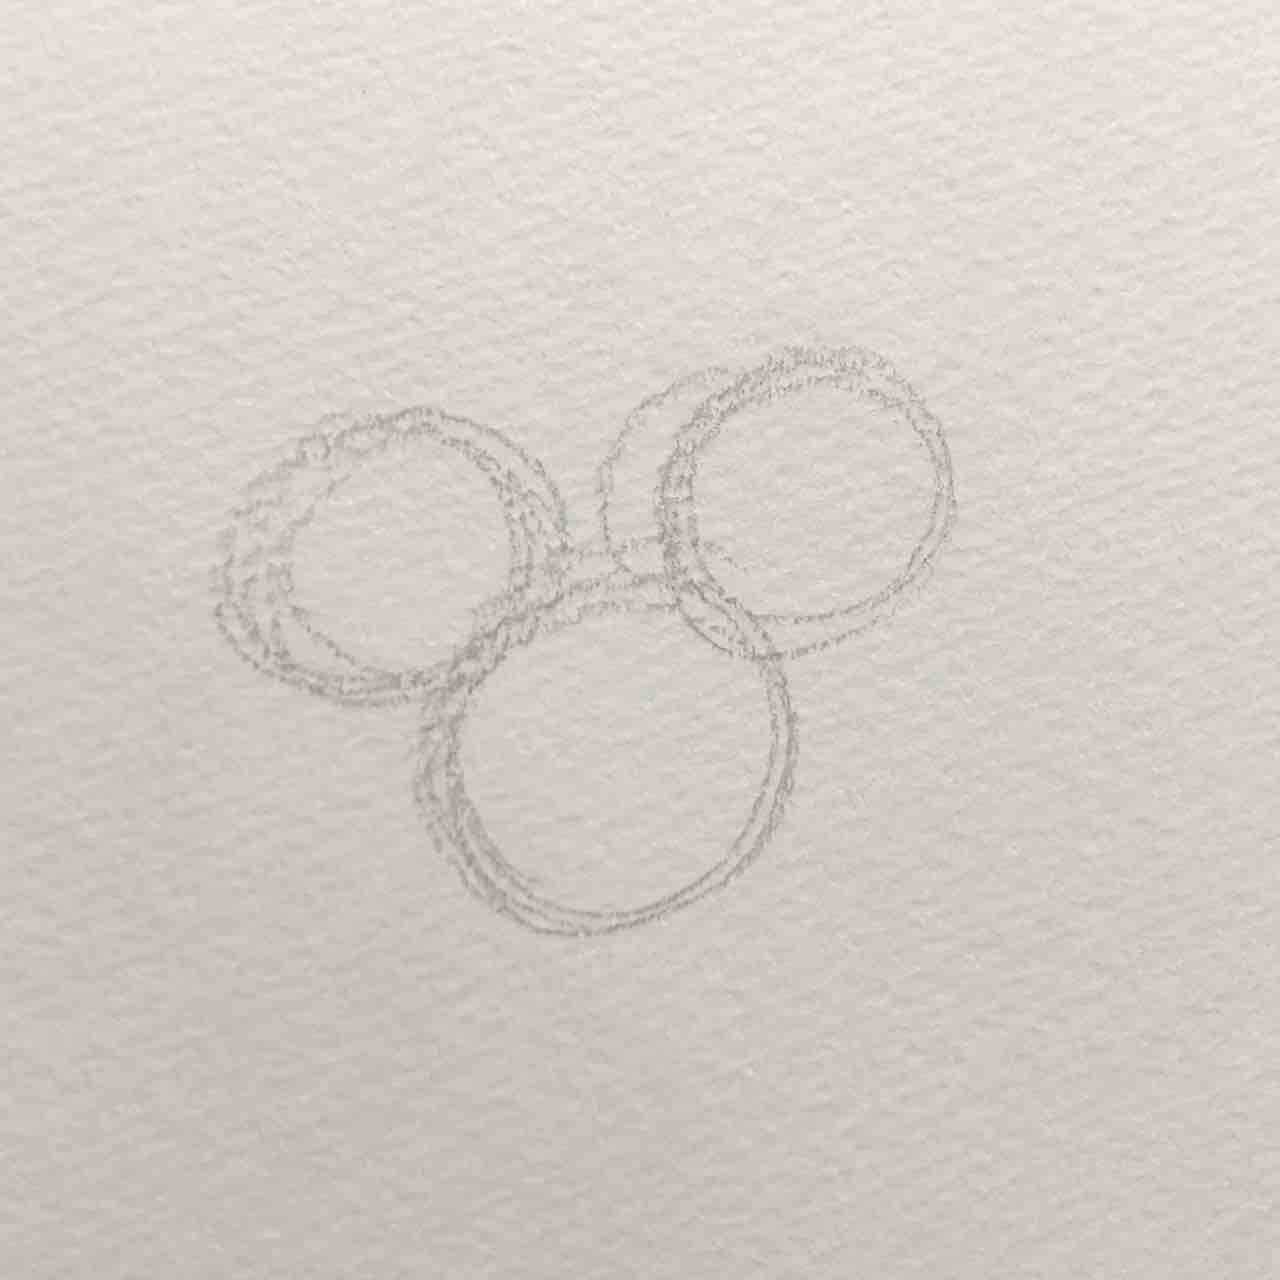 ダッフィーの描き方パート3 ミッキー Mickey みっきー